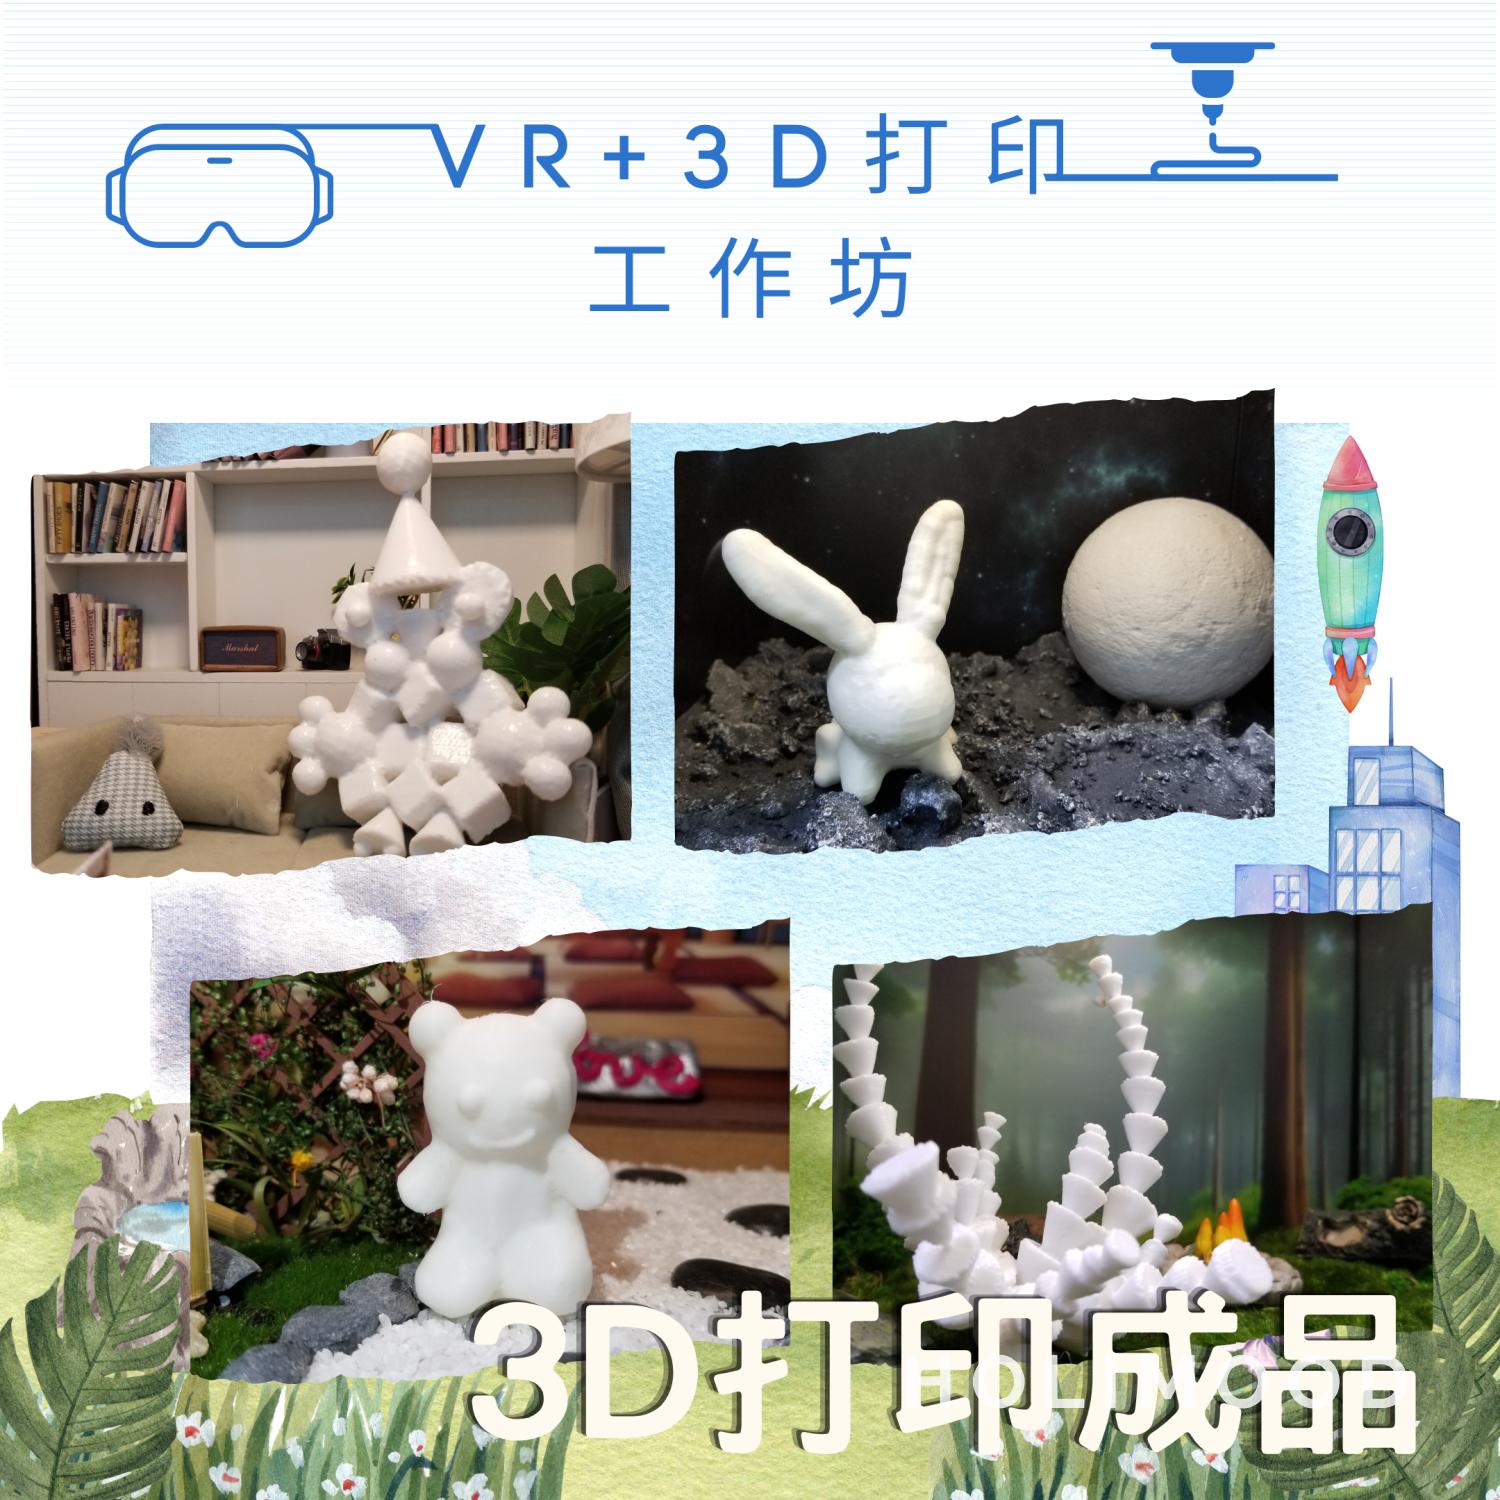 V-Owl Station VR Party 虛擬實境體驗站 VR+3D打印工作坊 4